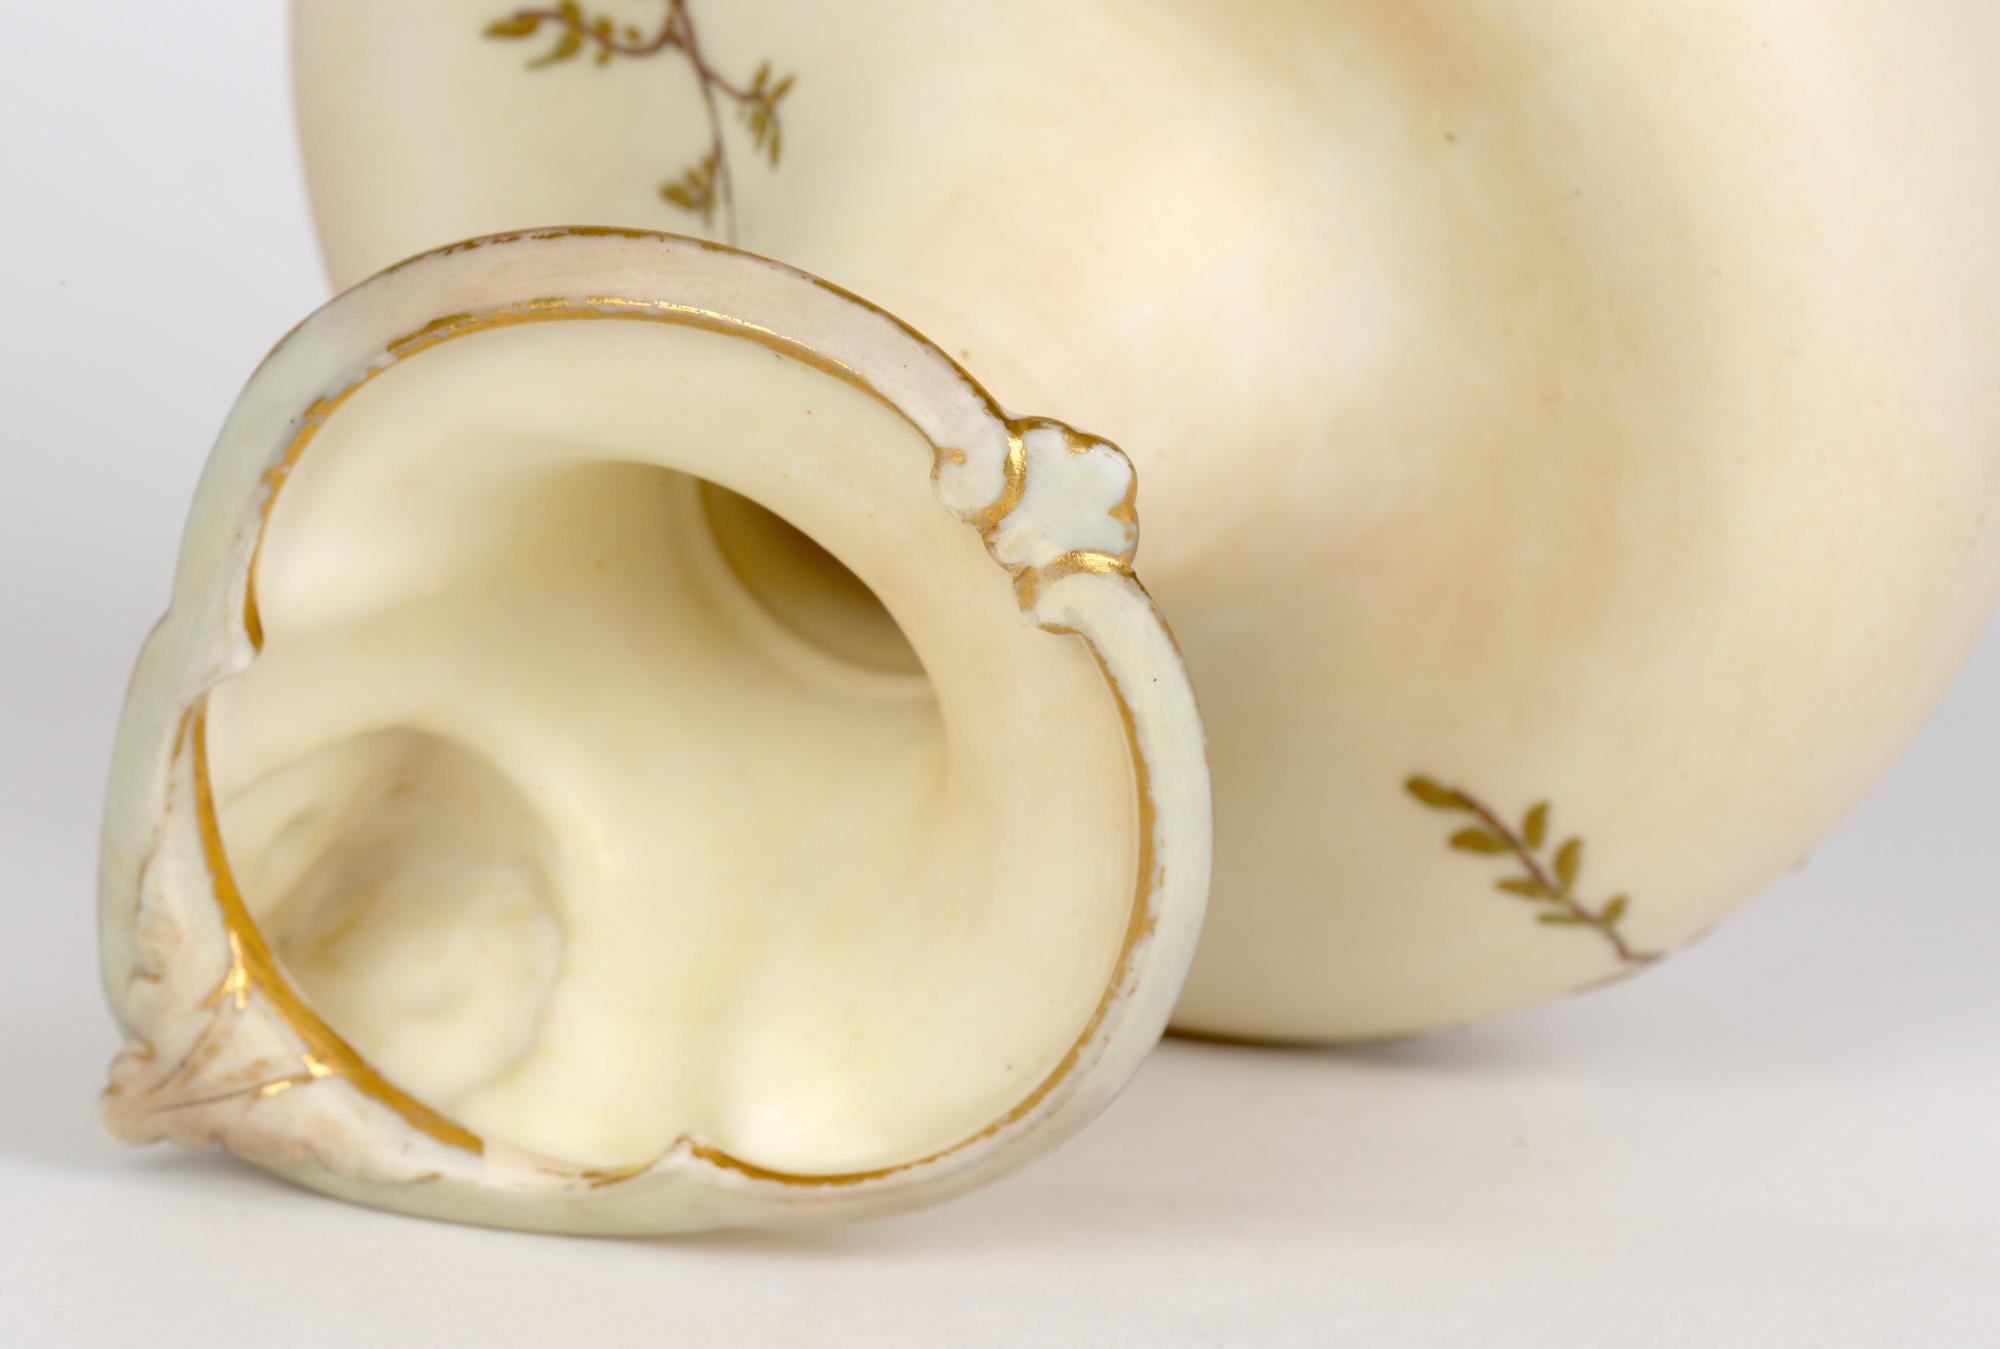 Pichet inhabituel en porcelaine ivoire rougissante Grainger & Co Royal Worcester, décoré de motifs floraux et daté de 1894. La cruche repose sur un pied de piédestal arrondi, avec un corps large et arrondi, un col étroit et comprimé vers le bas, un